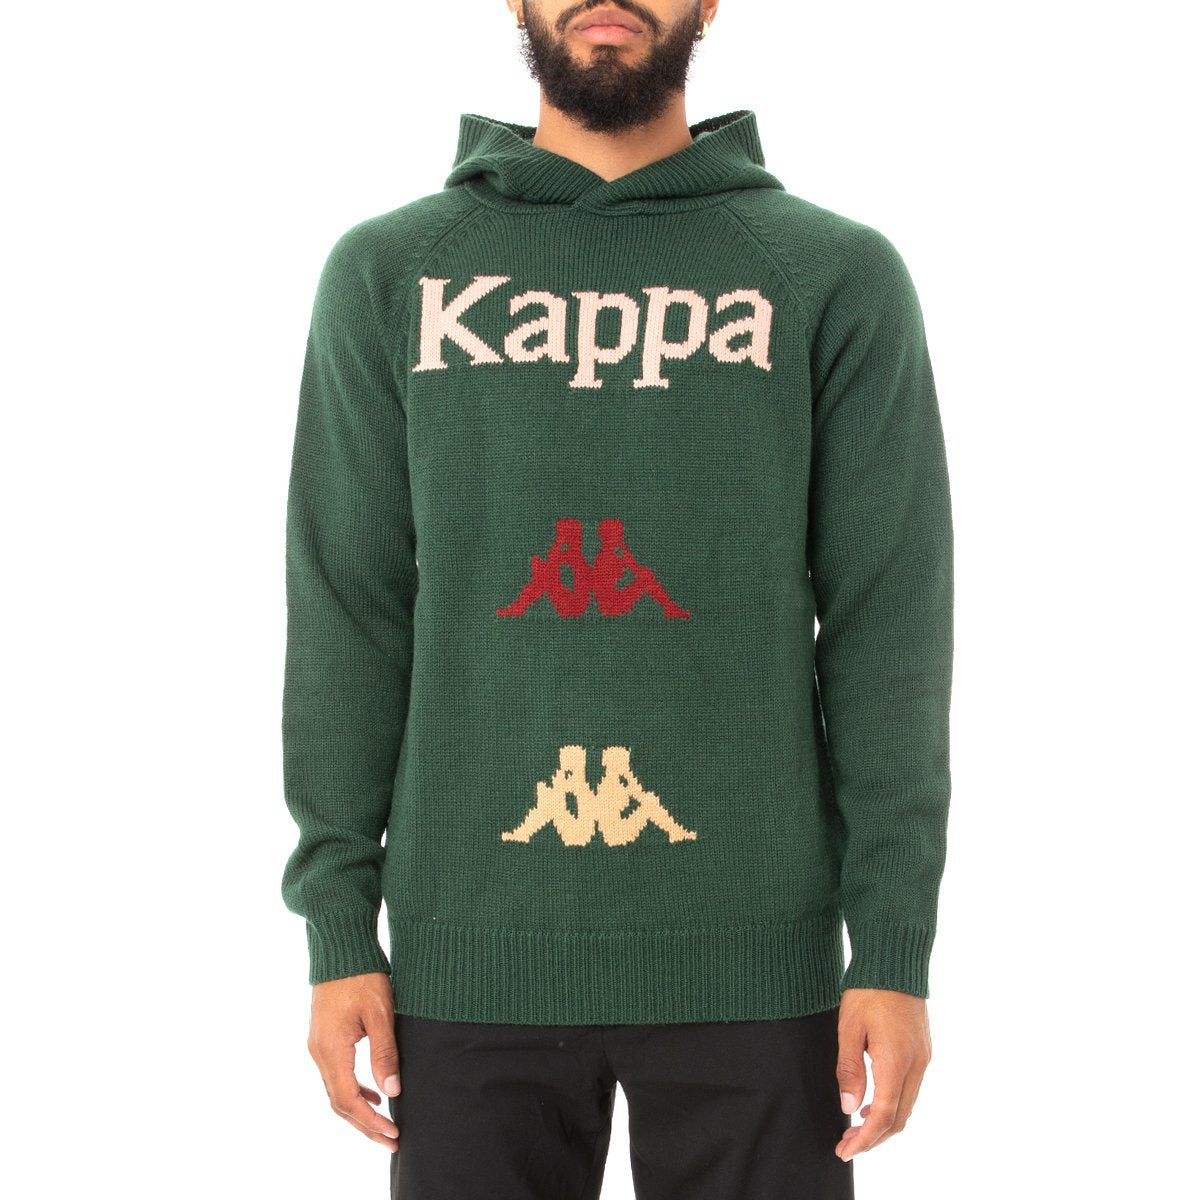 kappa hoodie black and gold